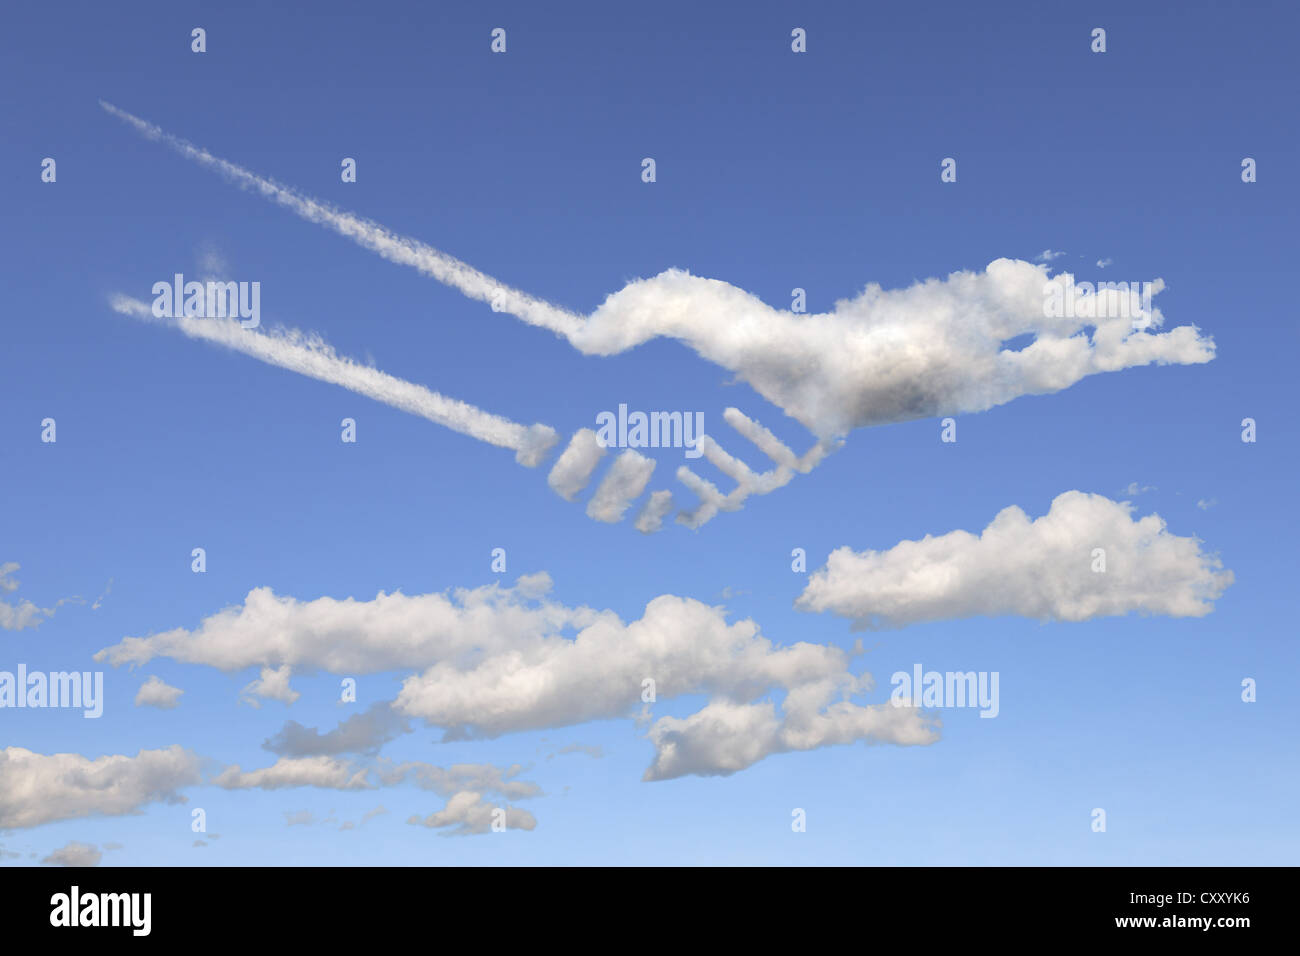 Nuvole conformata come una stretta di mano, illustrazione Foto Stock